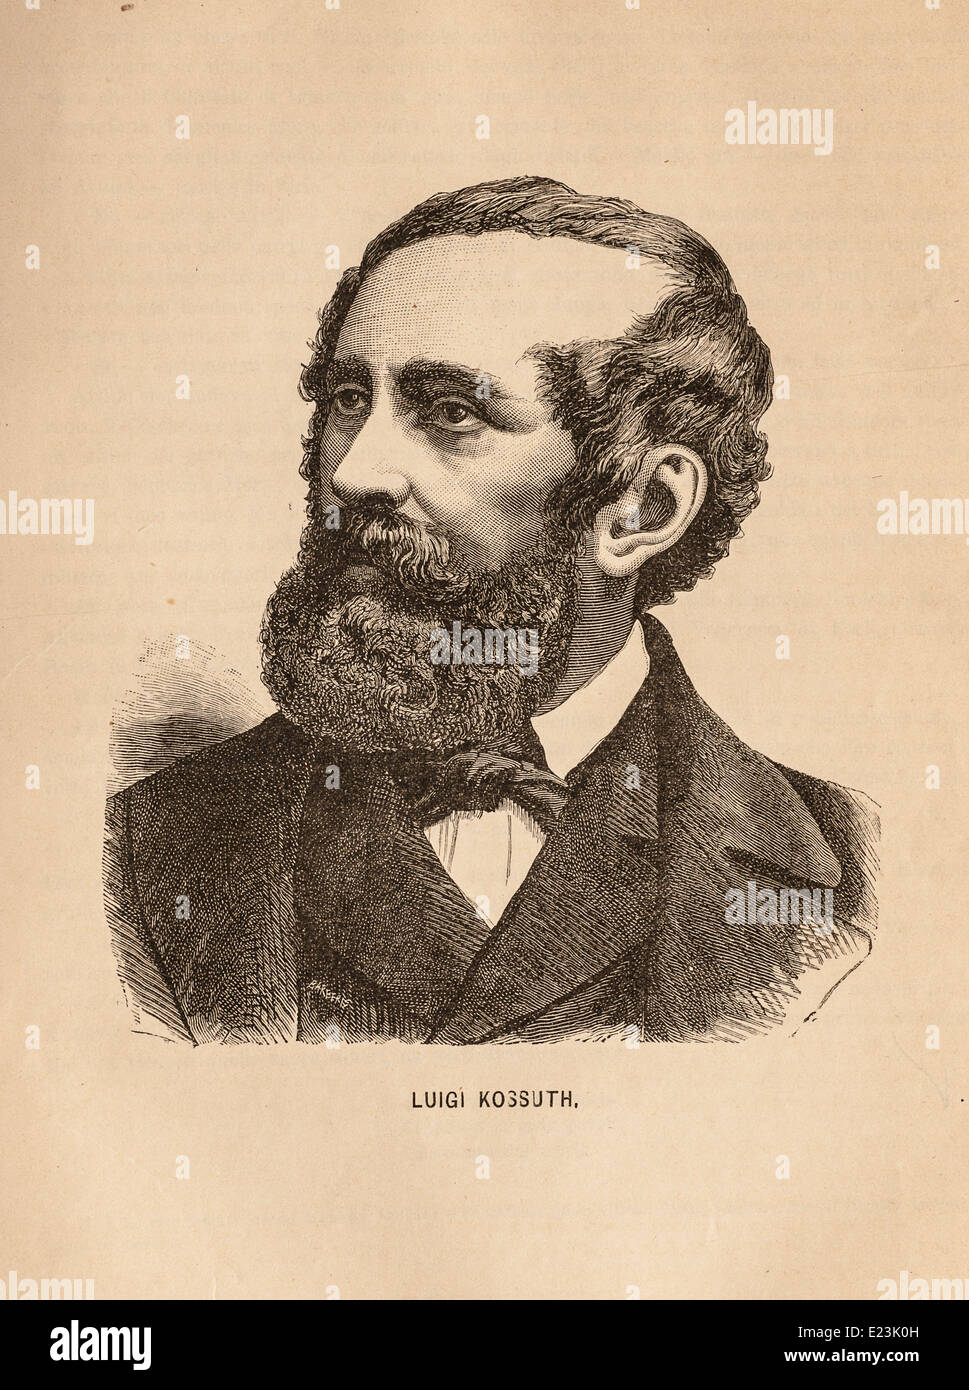 Giuseppe Mazzini du livre de Jessie W. Mario de vie de Mazzini. Portrait de Luigi Kossuth Banque D'Images